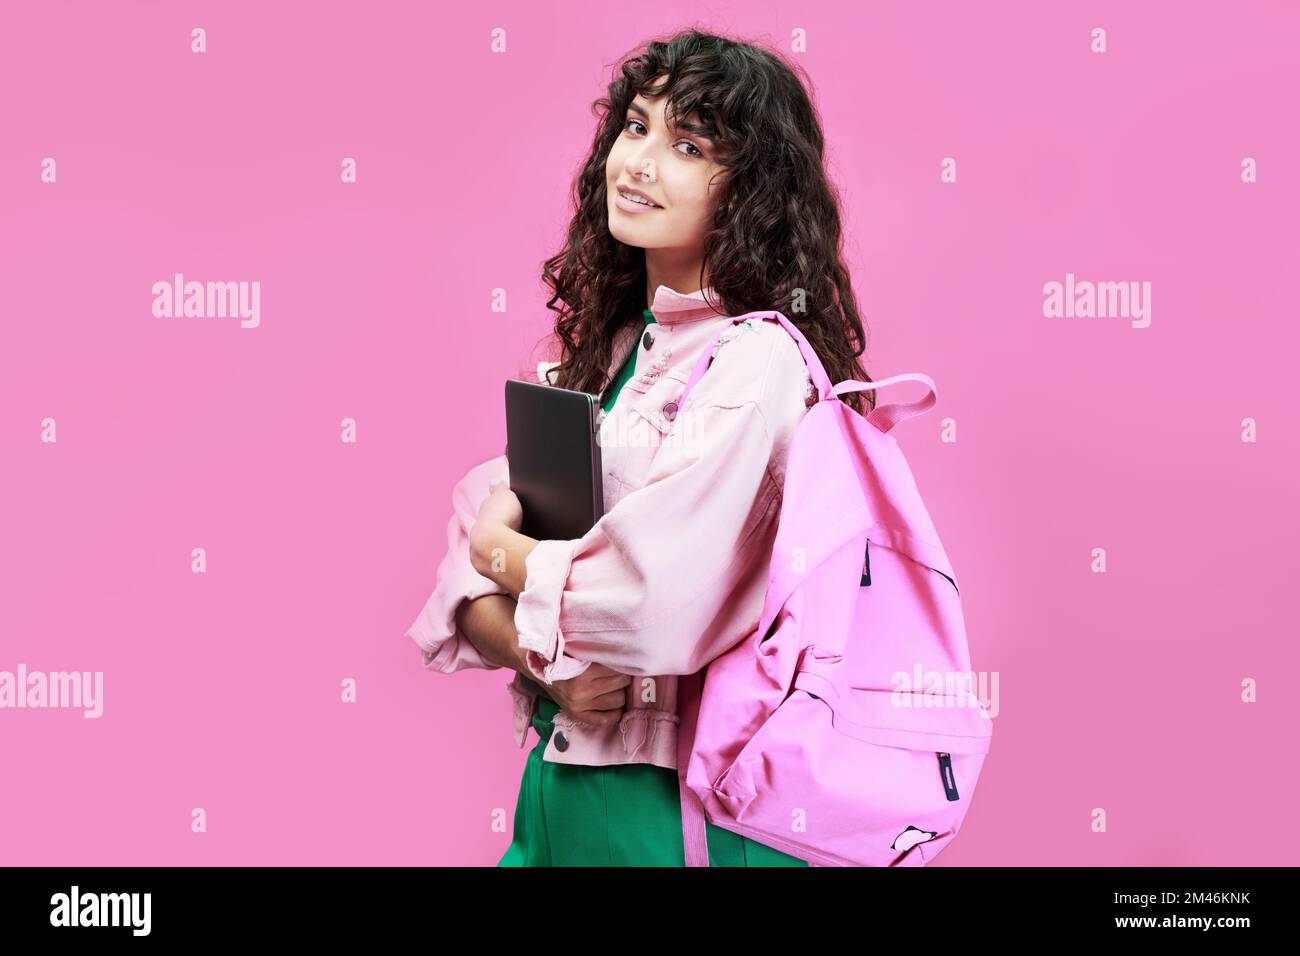 Estudiante femenina inteligente de la universidad o escuela secundaria con chaqueta de mezclilla de pie frente a la cámara contra el fondo rosa Foto de stock